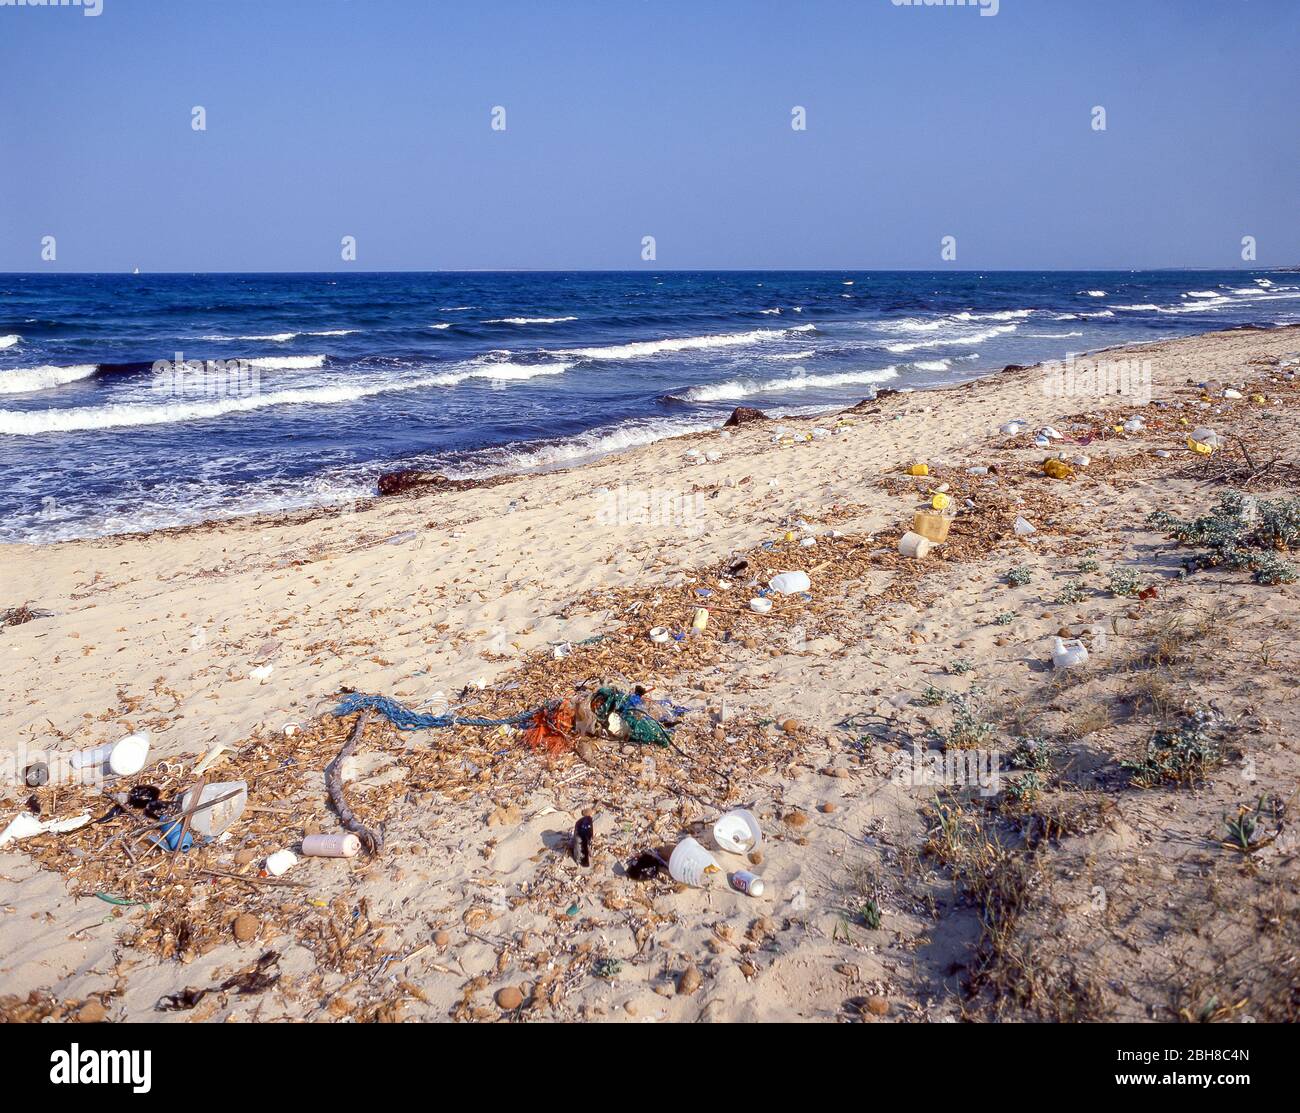 Pollution plastique sur la plage, Costa del sol, Andalousie, Espagne Banque D'Images